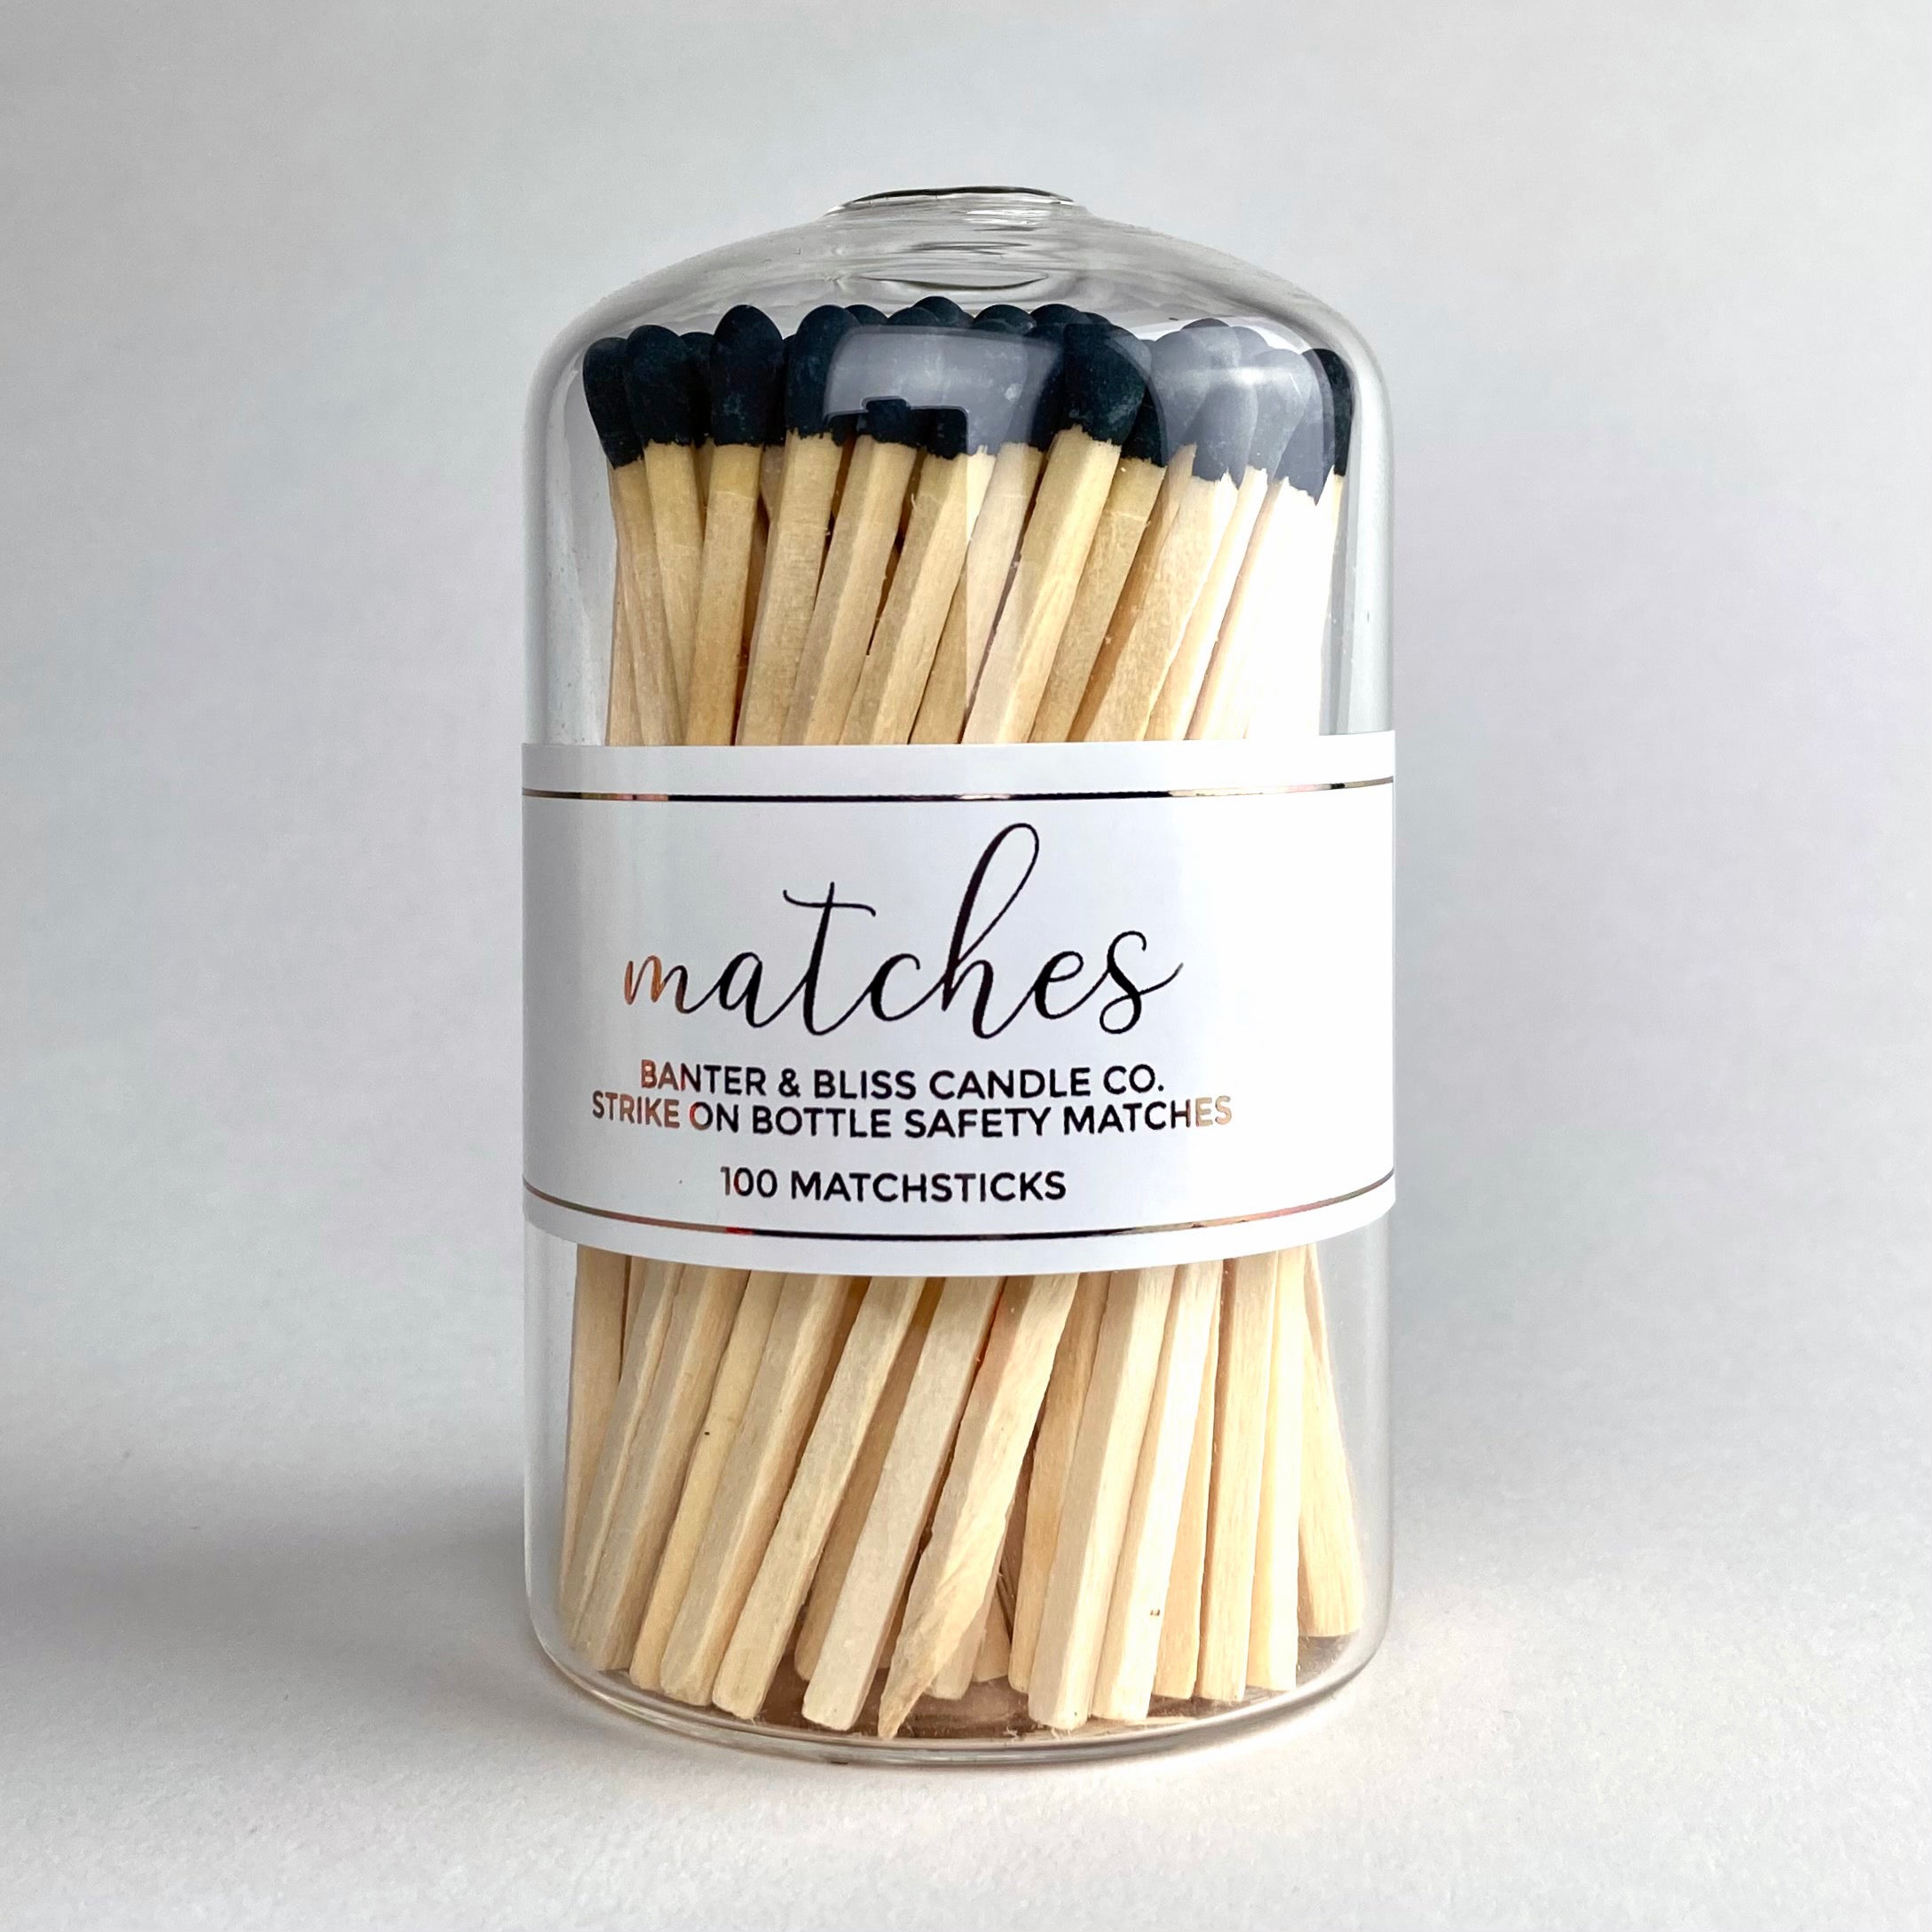 Banter & Bliss Modern Matchstick Bottle with Black Matches